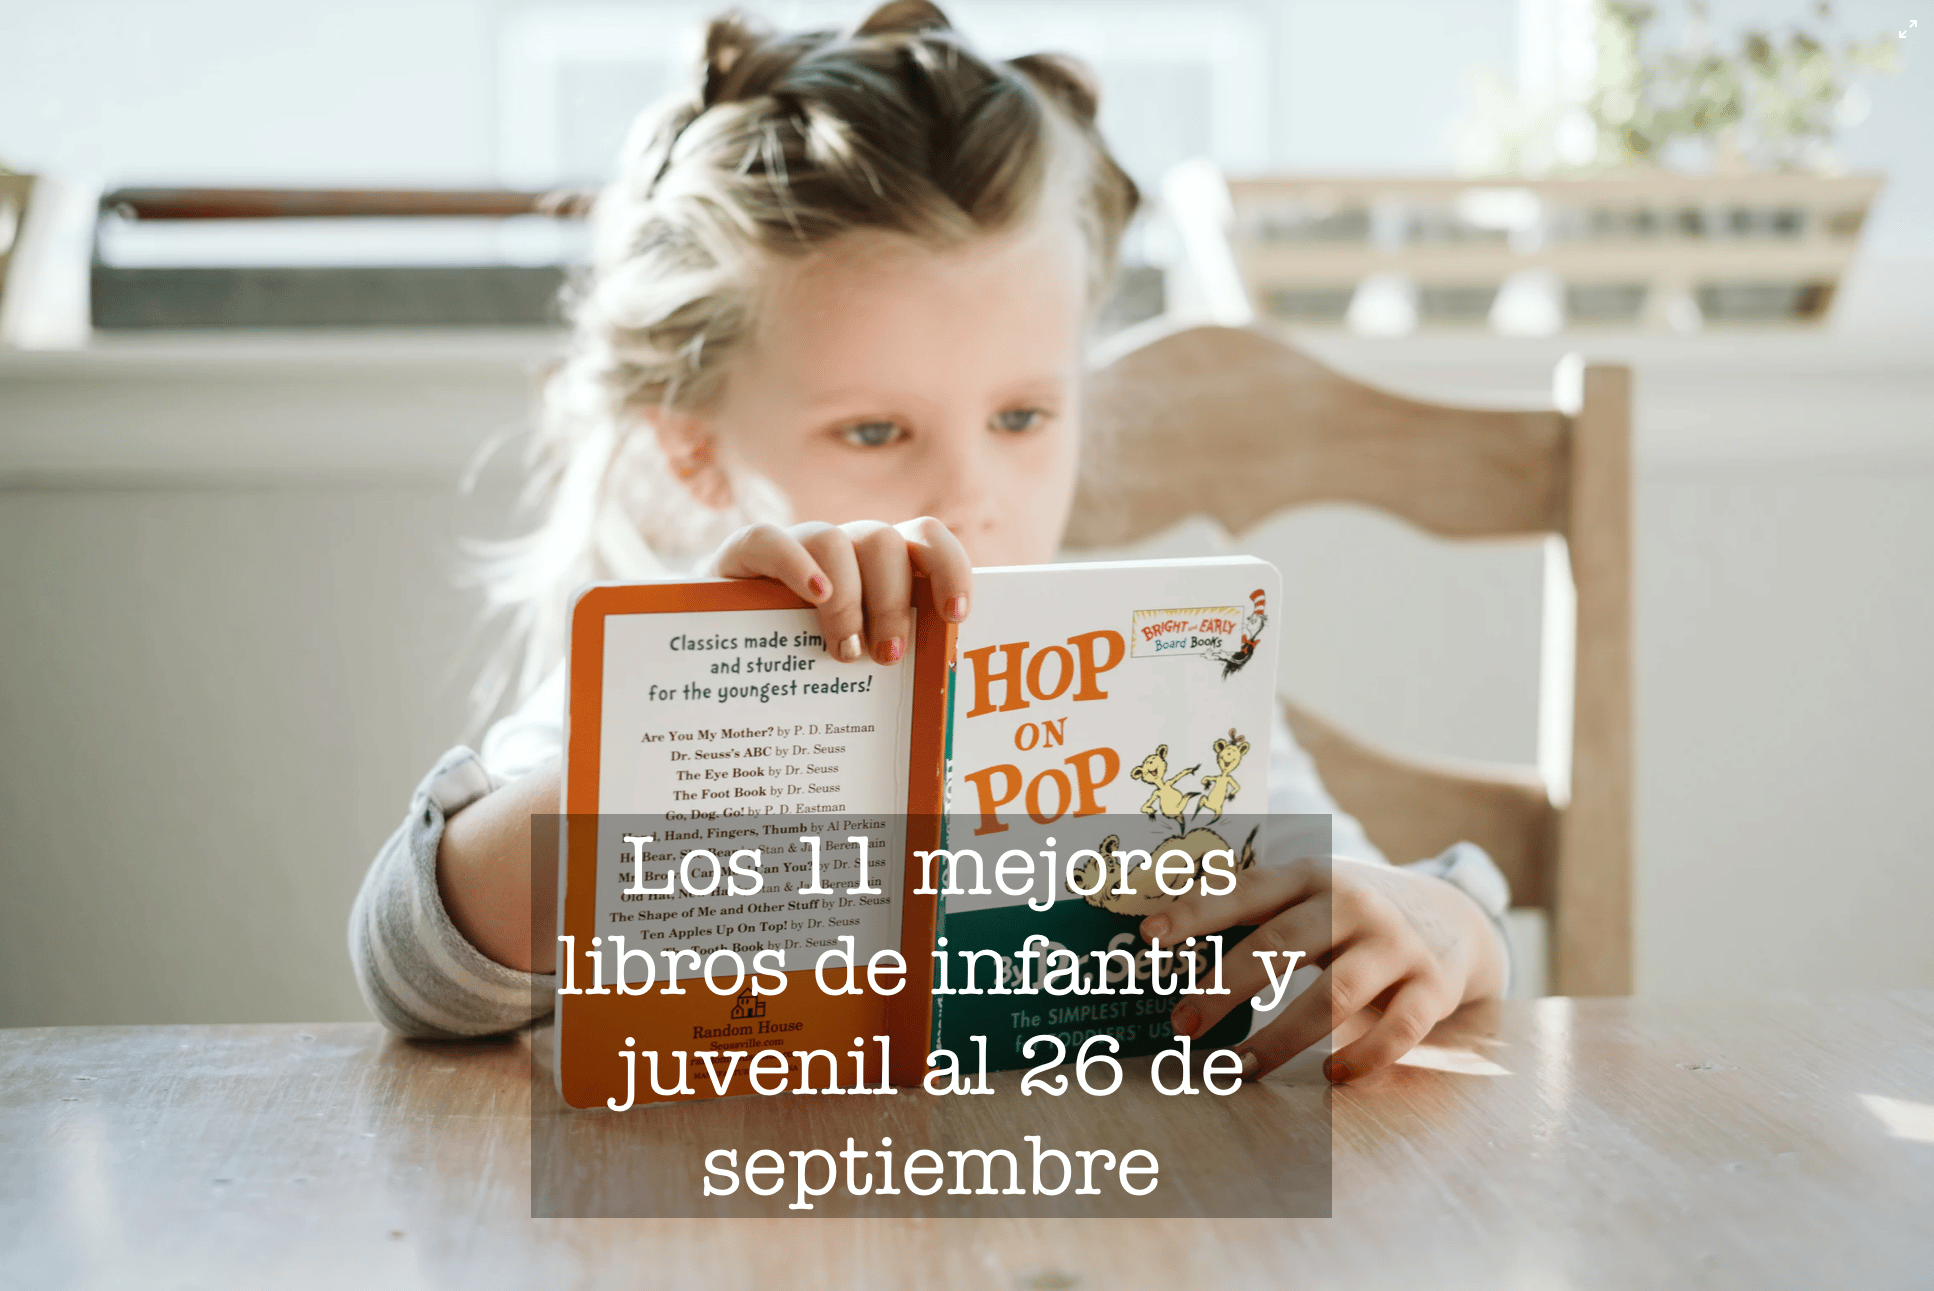 Los 11 mejores libros de infantil y juvenil al 26 de septiembre – El Placer de Lectura